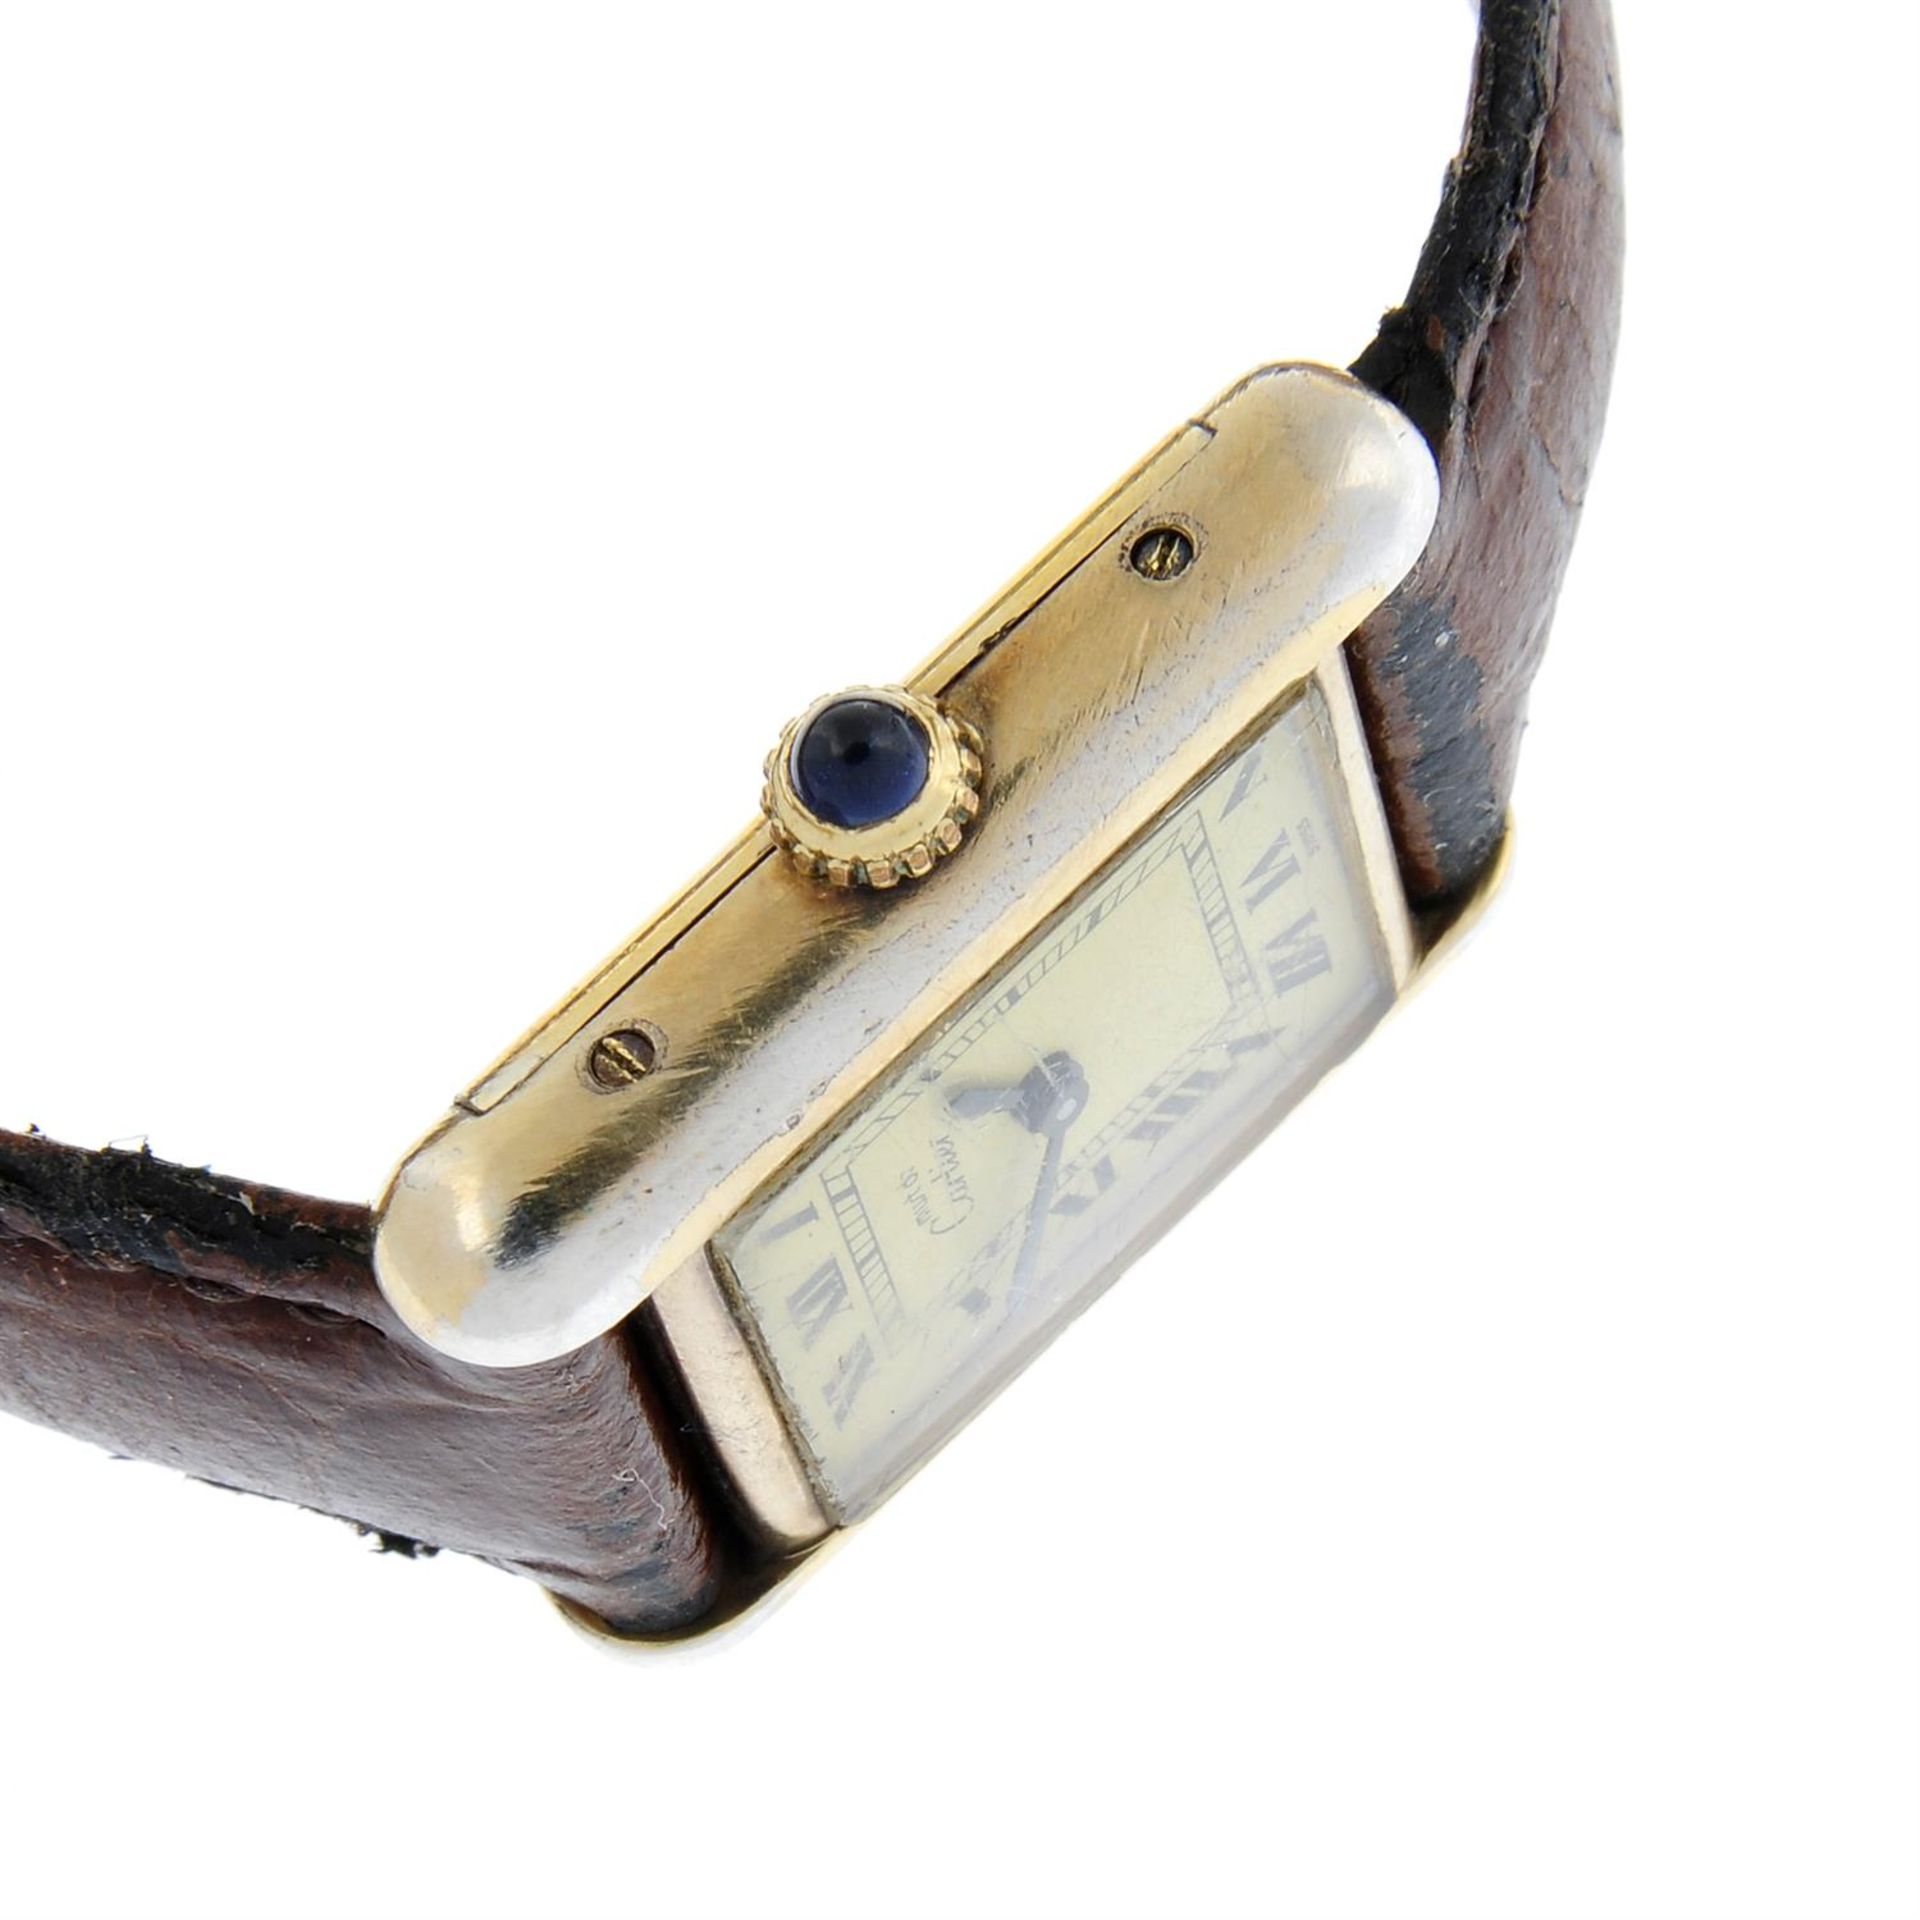 CARTIER - a gold plated silver Must de Cartier wrist watch, 20mm. - Image 3 of 4